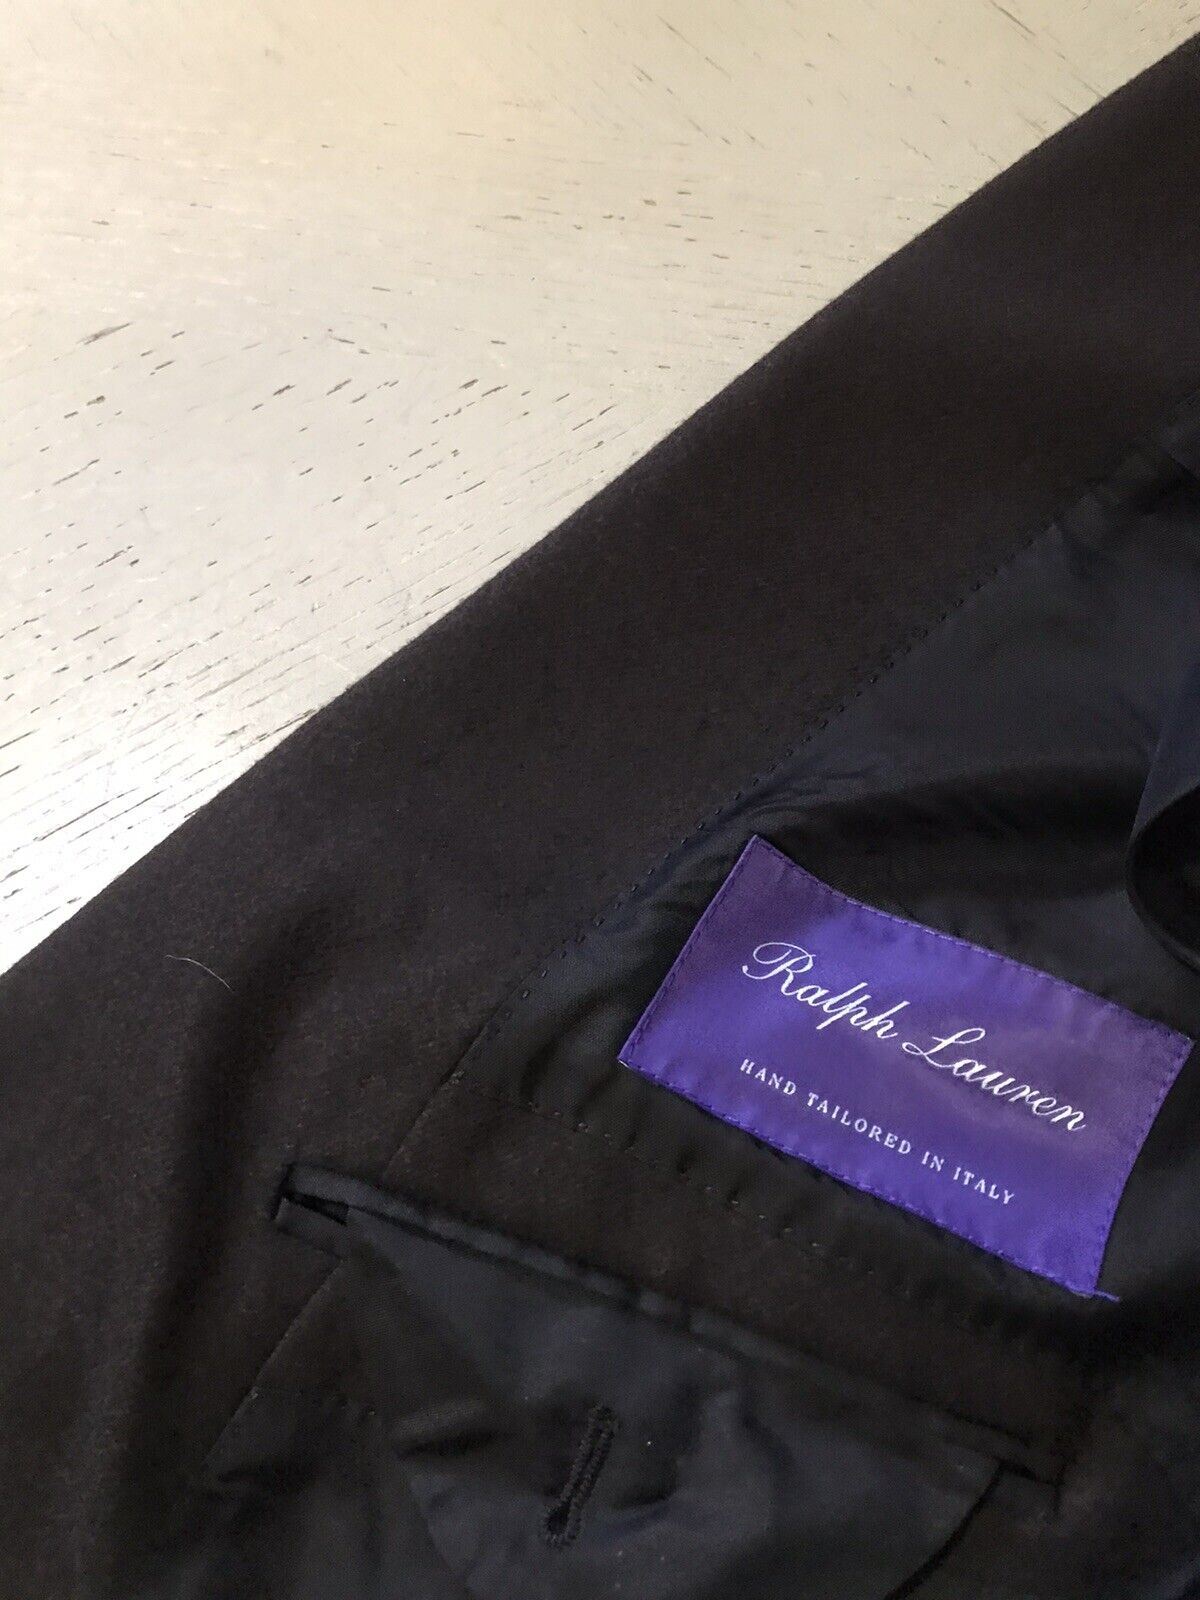 Neu mit Etikett: 3295 $ Ralph Lauren Purple Label Herren-Blazerjacke Braun 44R US/54R Eu Italien